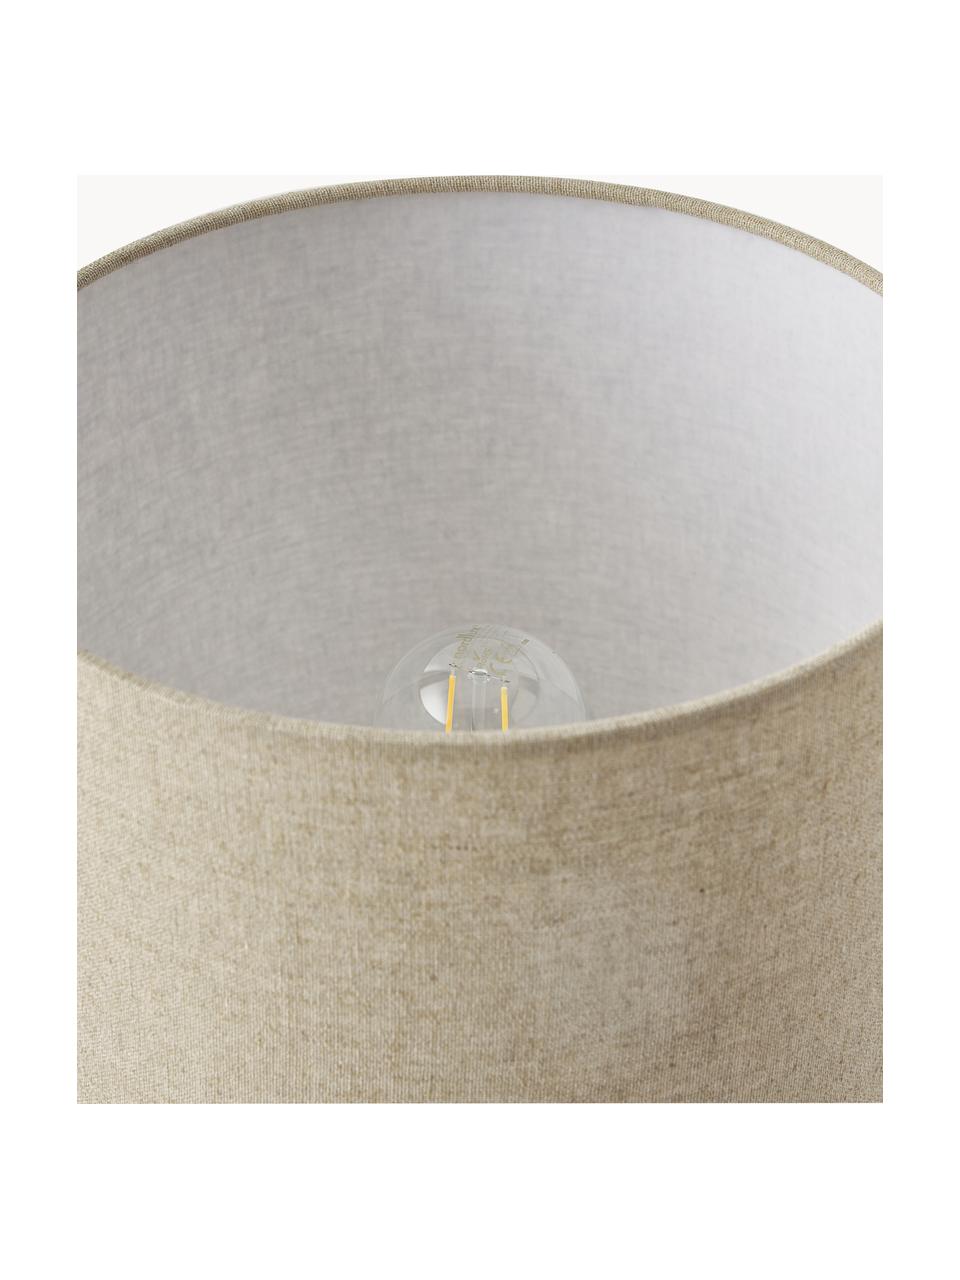 Lampada da tavolo con base in cemento Ike, Paralume: 100% lino, Base della lampada: cemento, Bianco crema, beige, Ø 30 x Alt. 45 cm